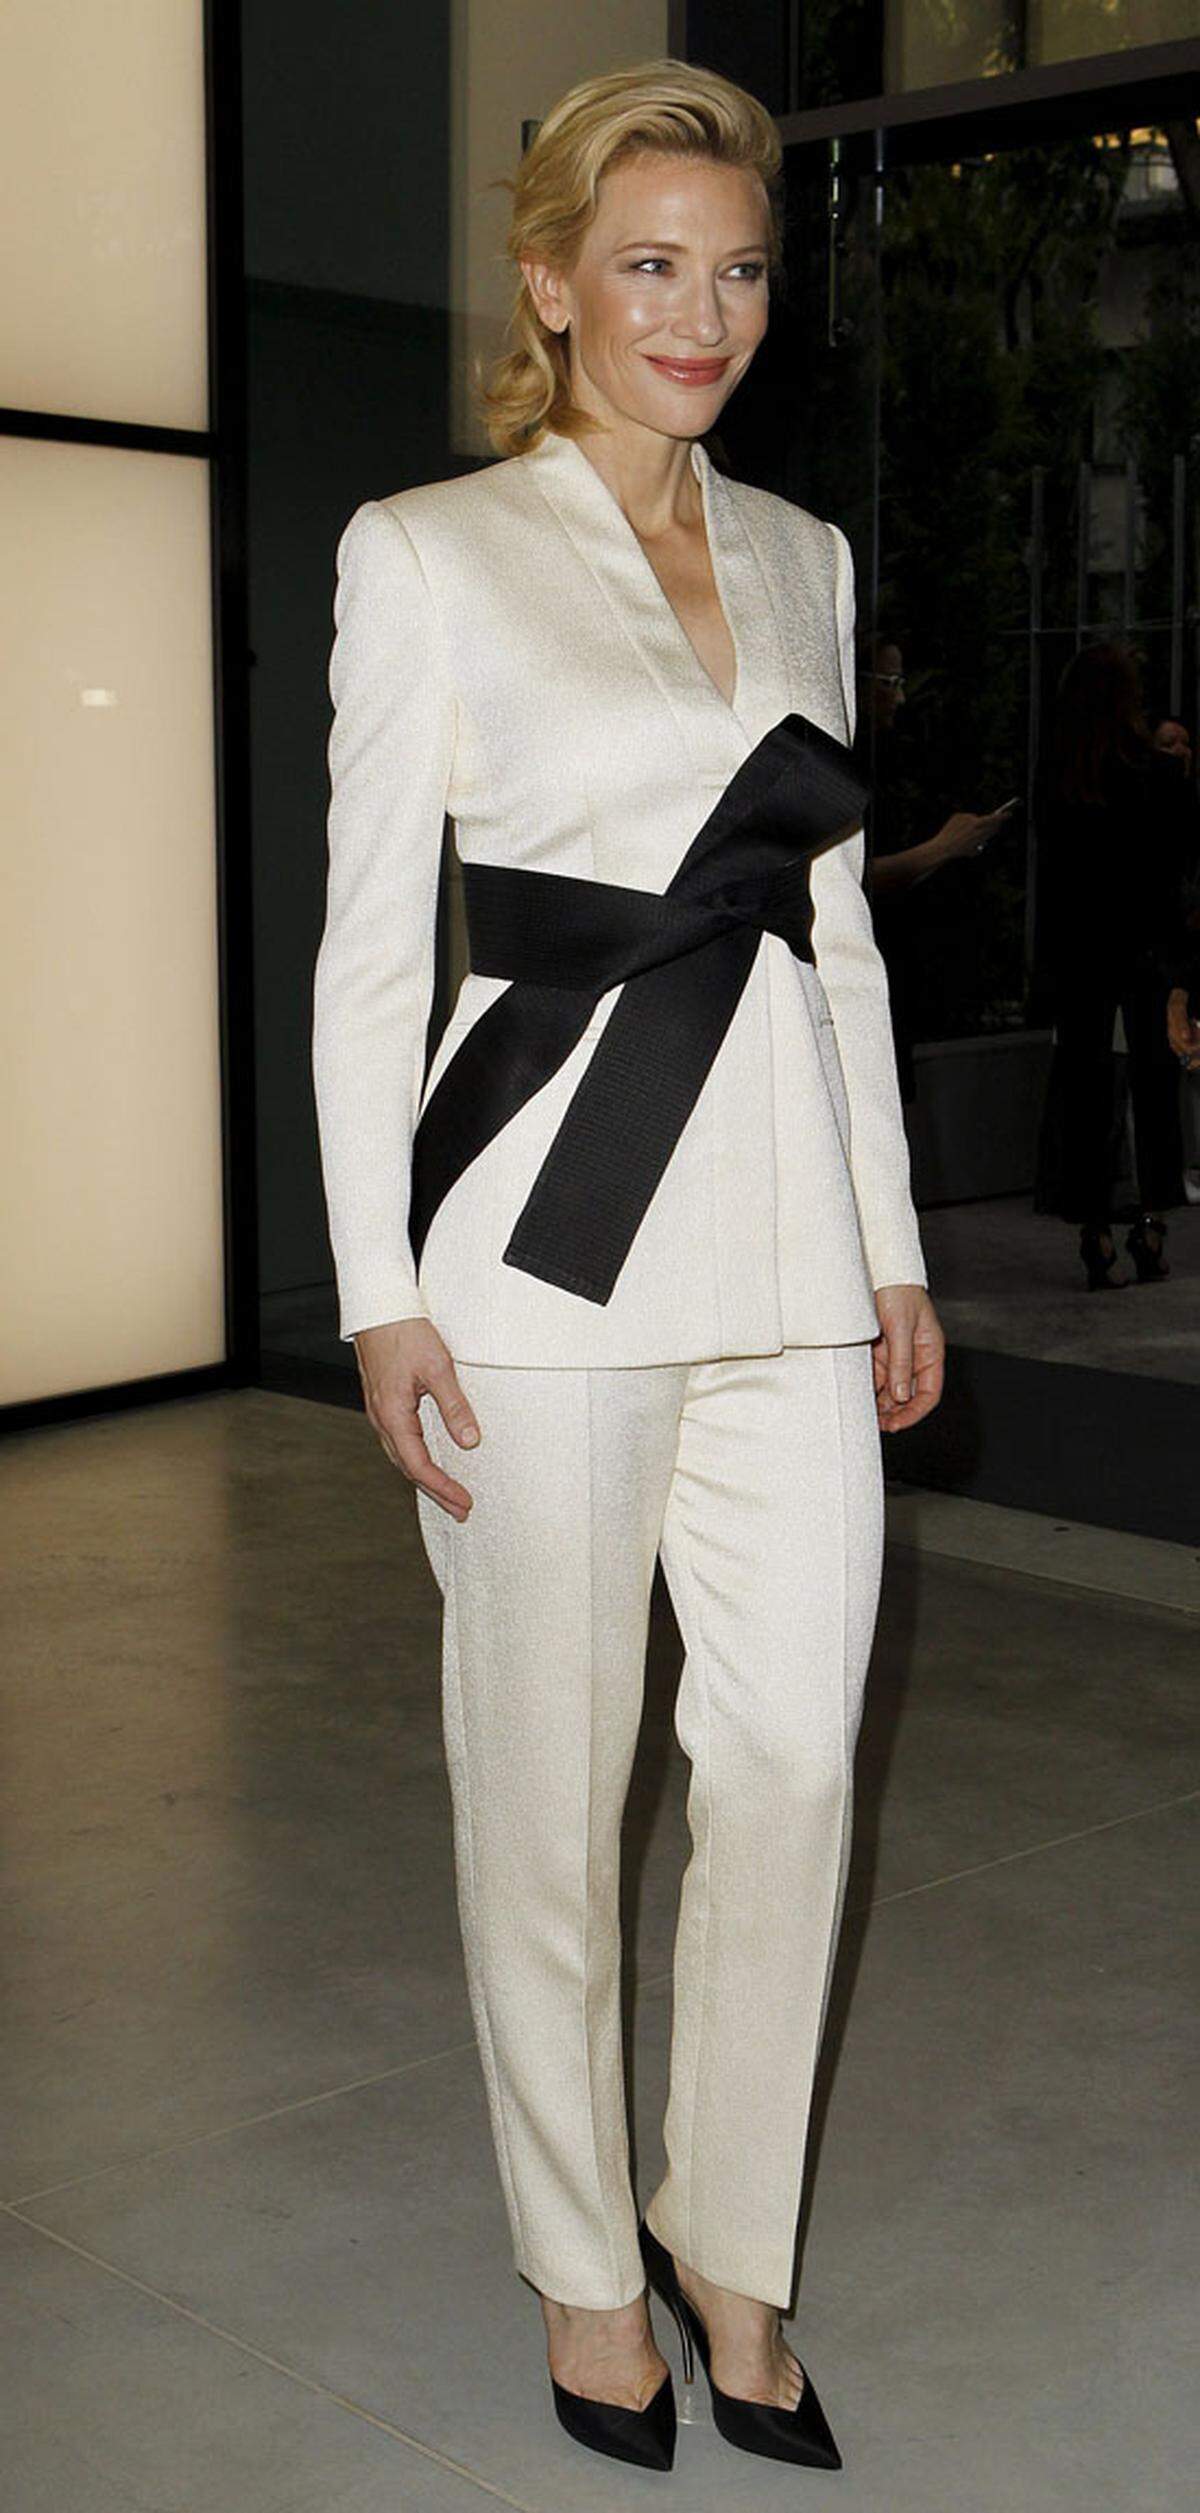 Gleichzeit mit dem Beginn der Expo Milano 2015 feiert Giorgio Armani sein 40-jähriges Firmenjubiläum, immerhin fungiert der Designer dabei als "Special Ambassador for Fashion". Armani-Muse Cate Blanchett erschien zur Feier im weißen Hosenanzug.